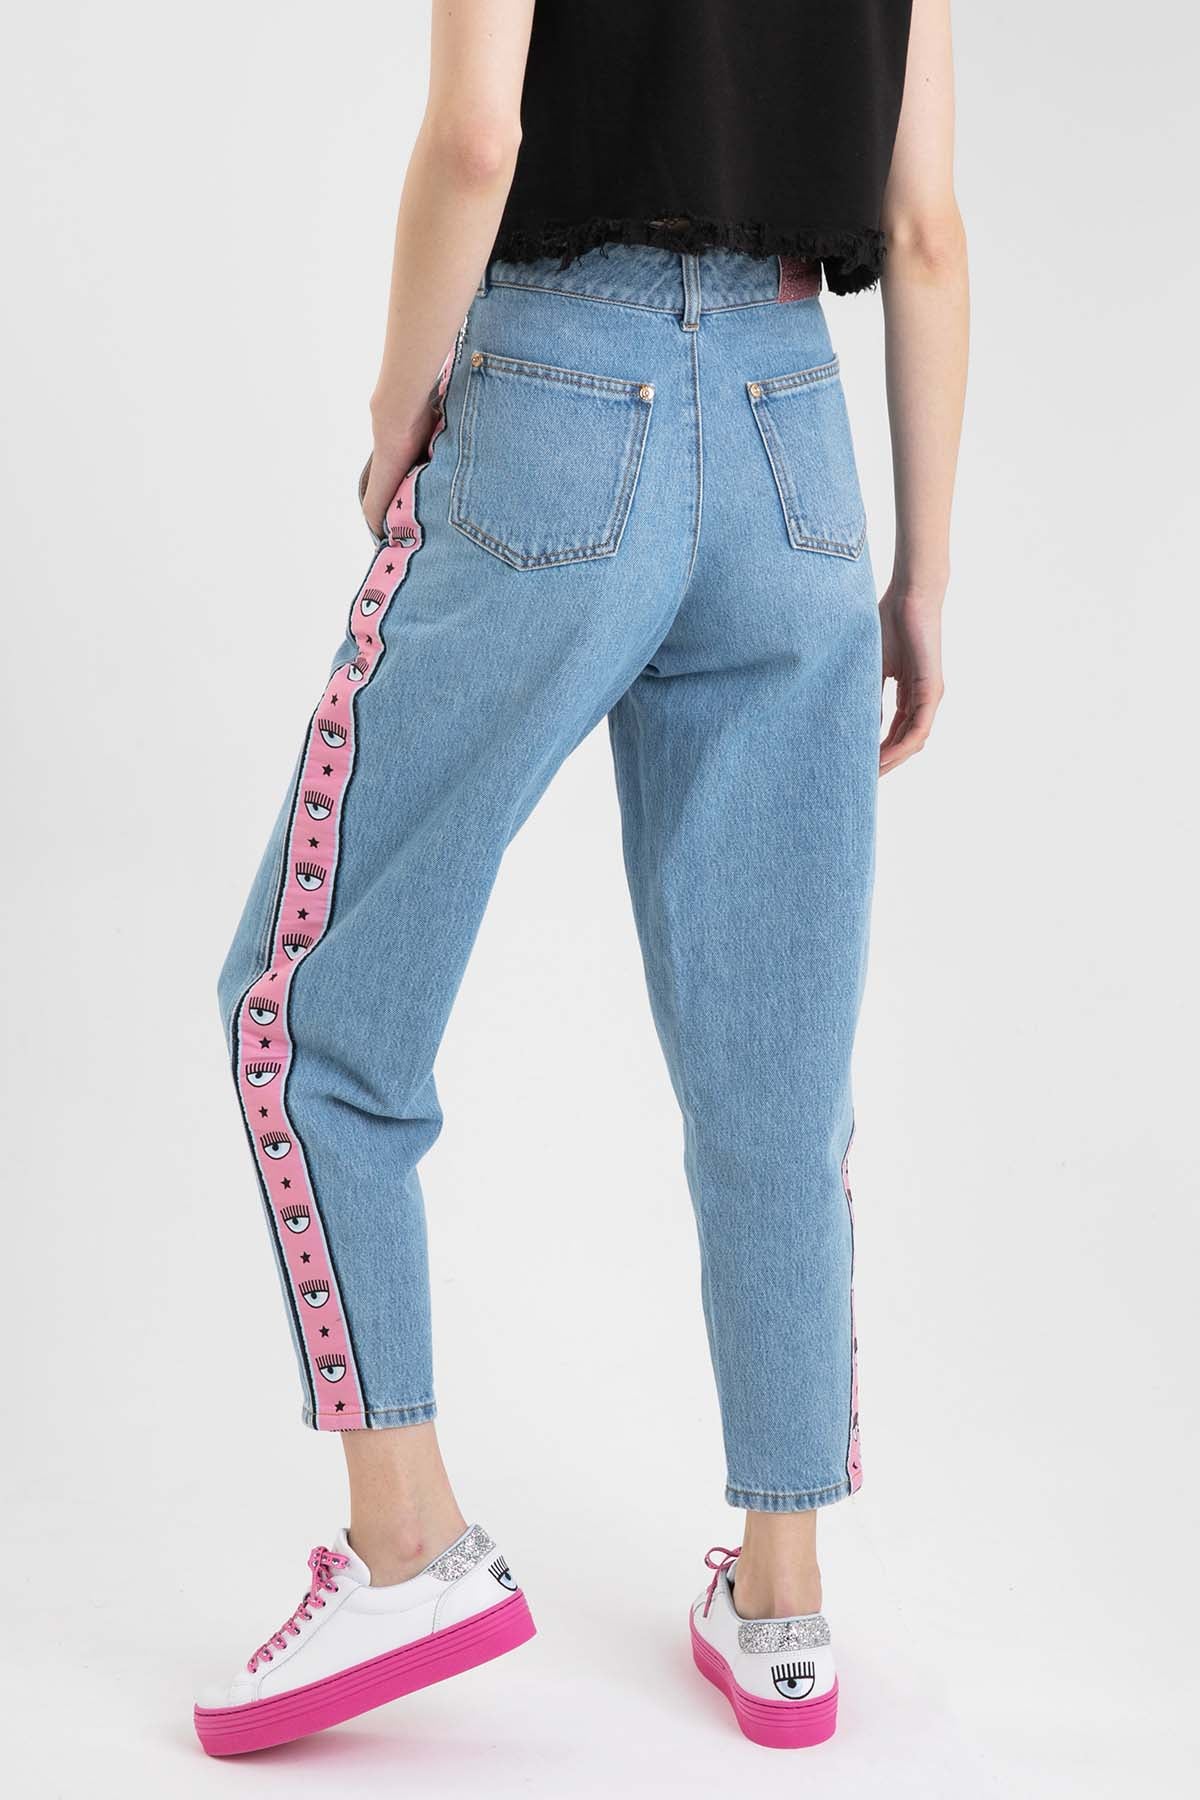 Chiara Ferragni Boyfriend Yüksek Bel Jeans-Libas Trendy Fashion Store